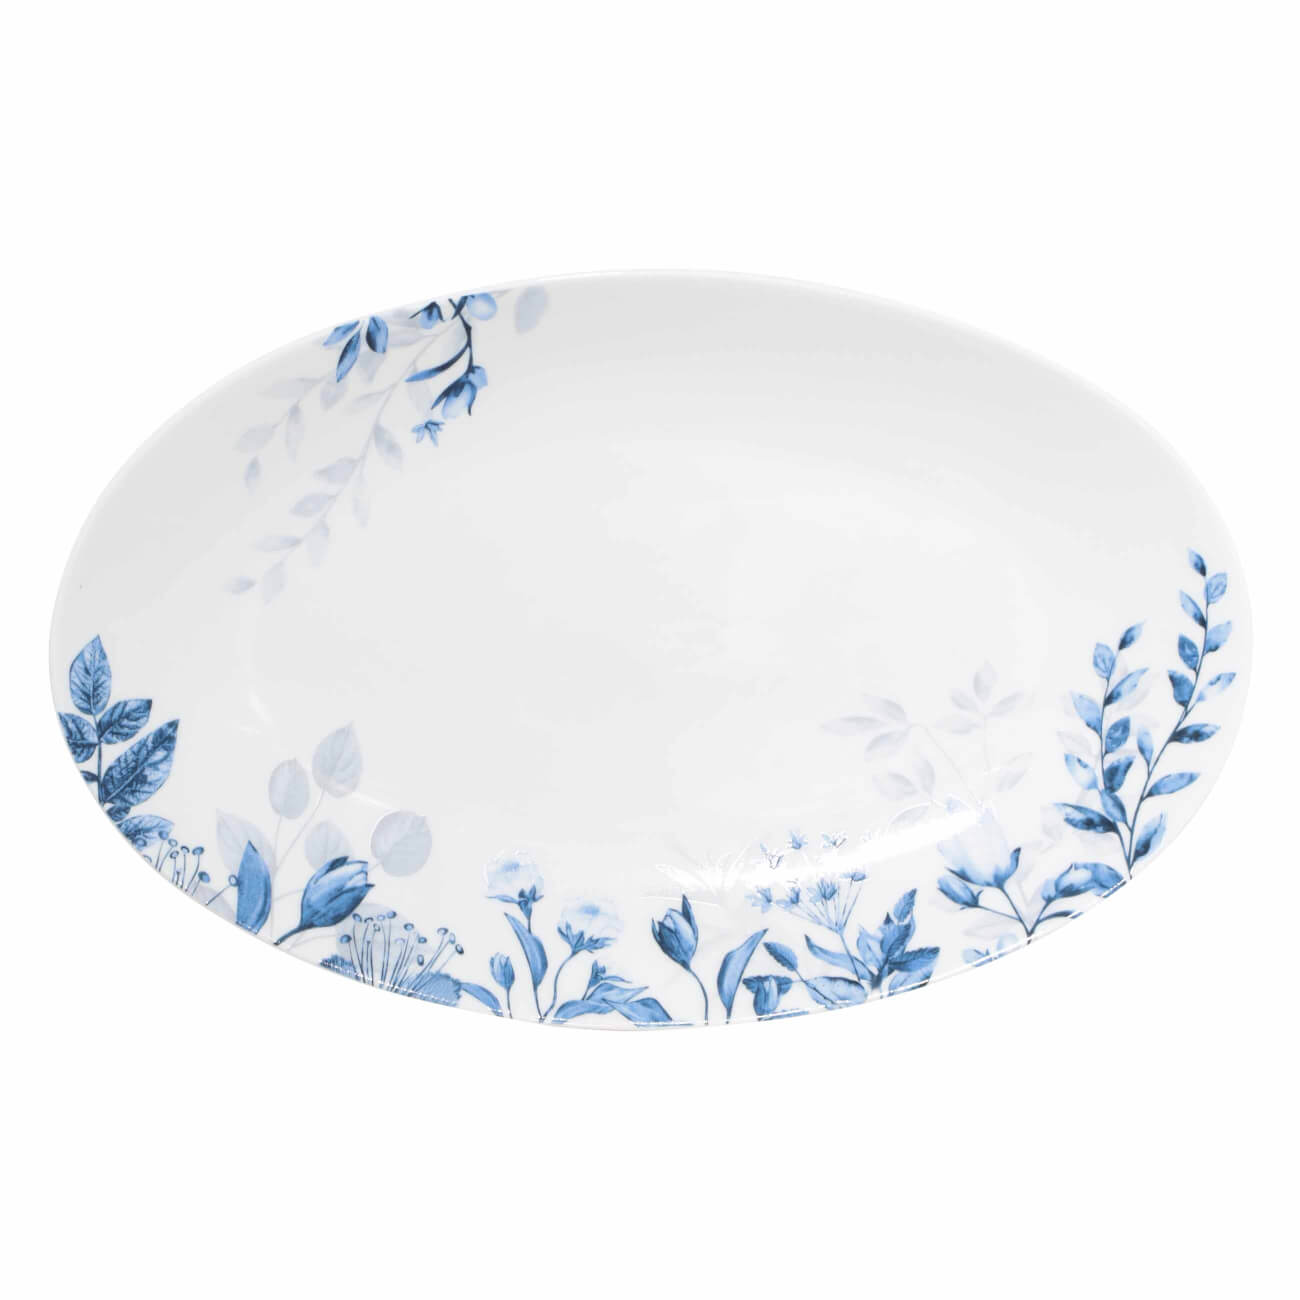 Блюдо, 30х19 см, фарфор N, овальное, белое, Синие цветы, Royal flower блюдо pyrex irresistible 30х21см овальное